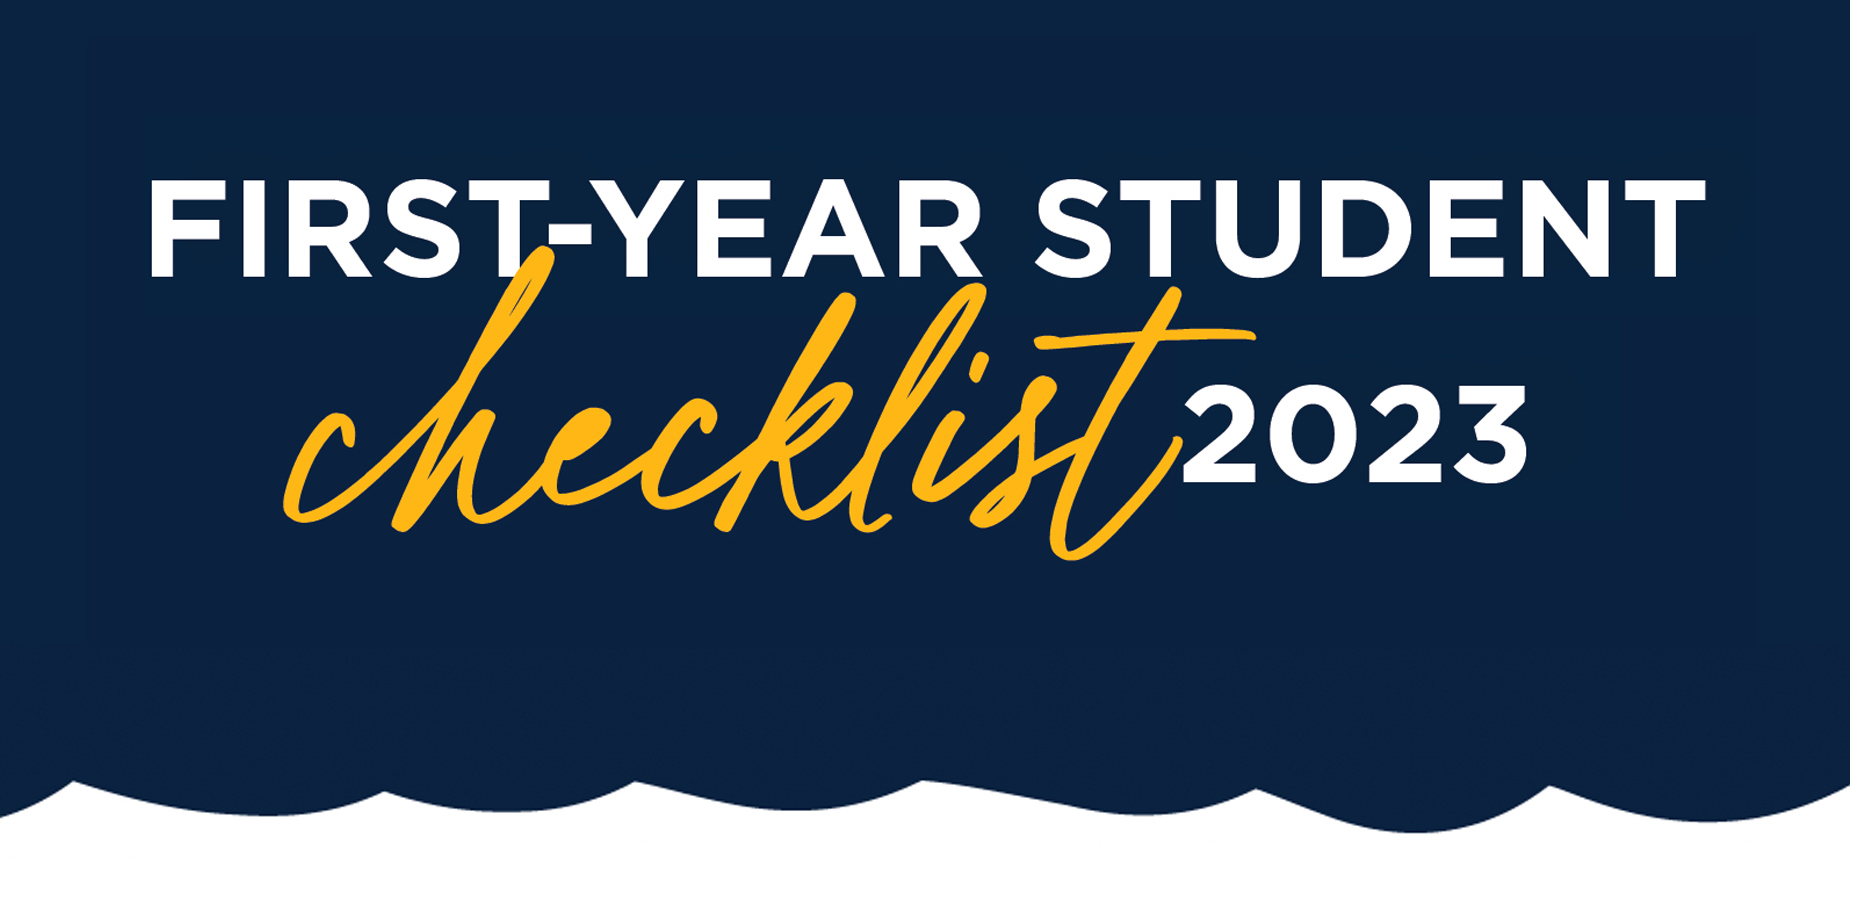 First-Year Student Checklist